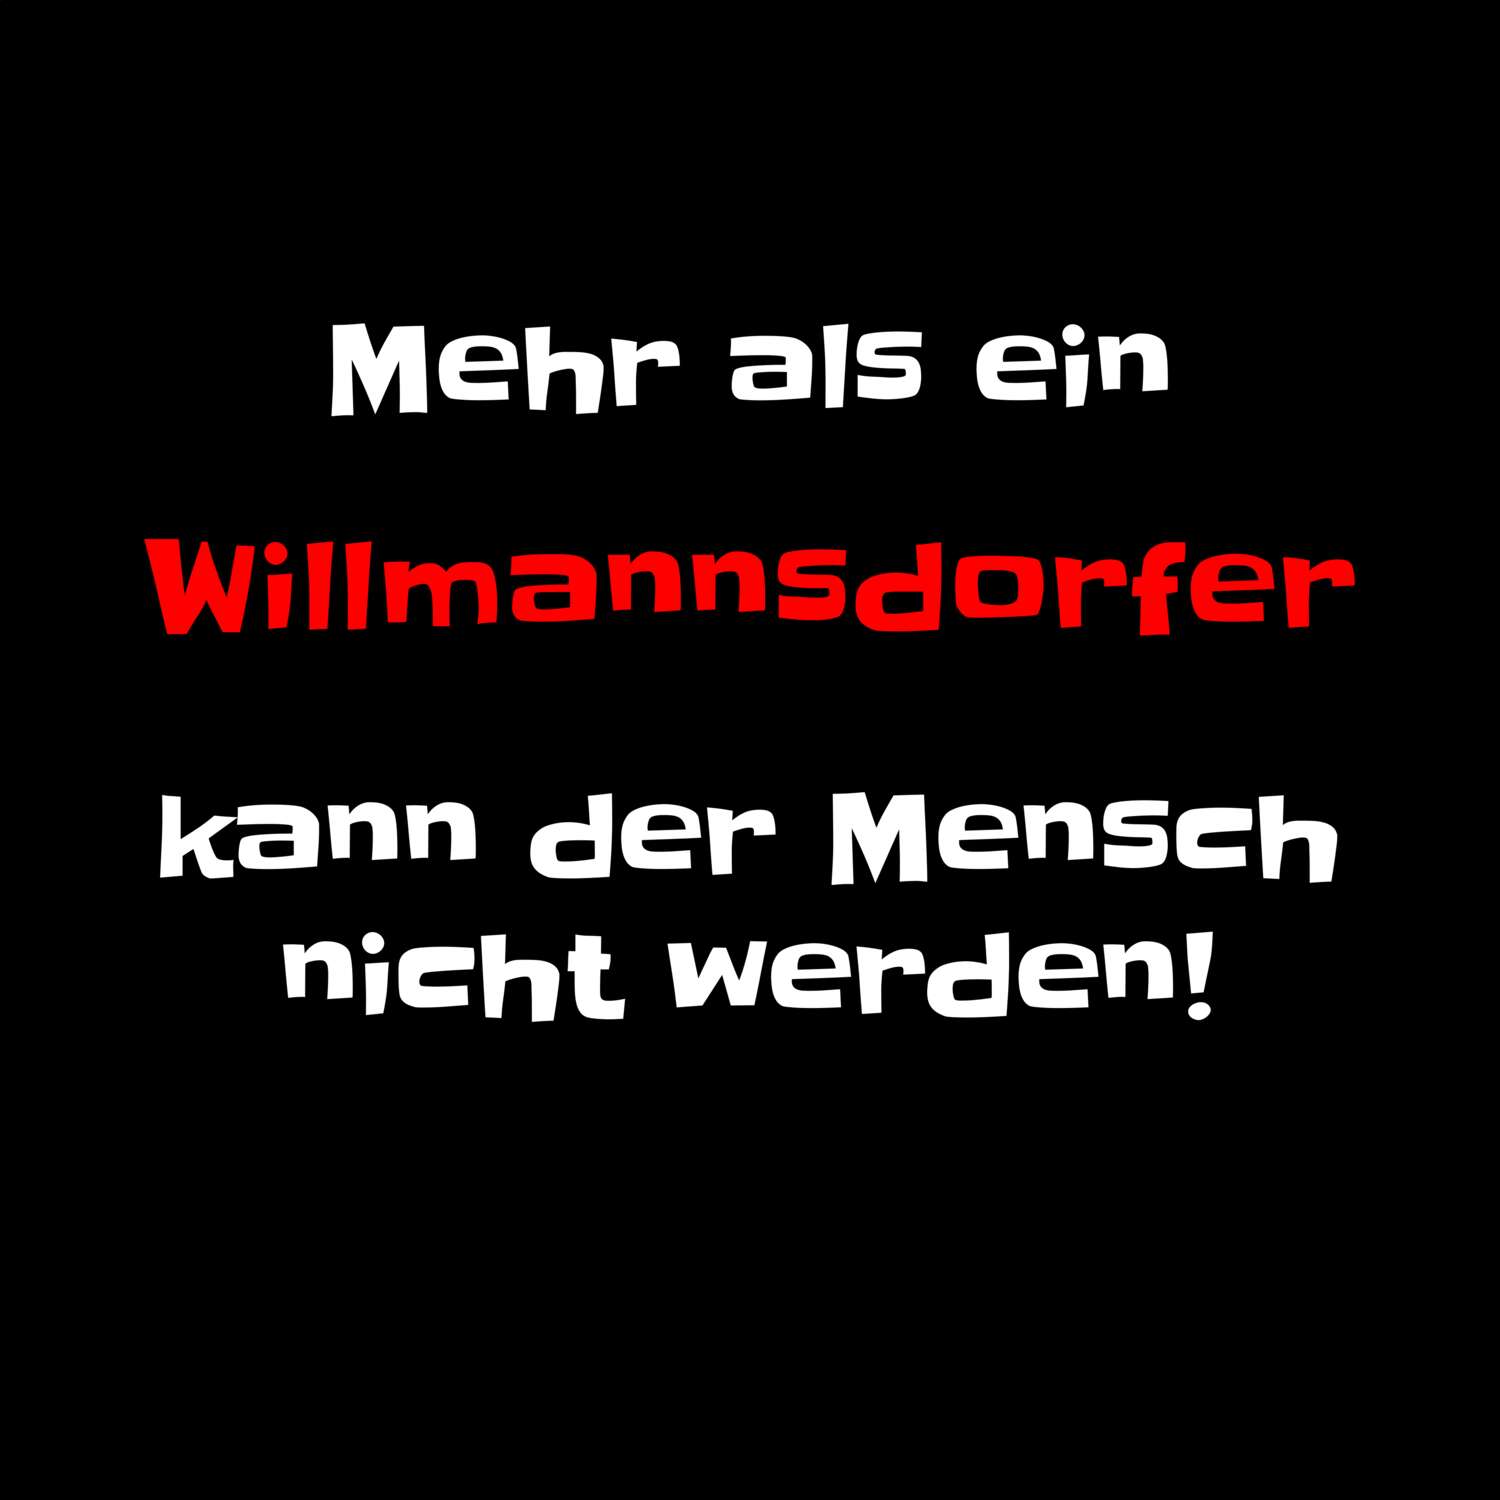 Willmannsdorf T-Shirt »Mehr als ein«